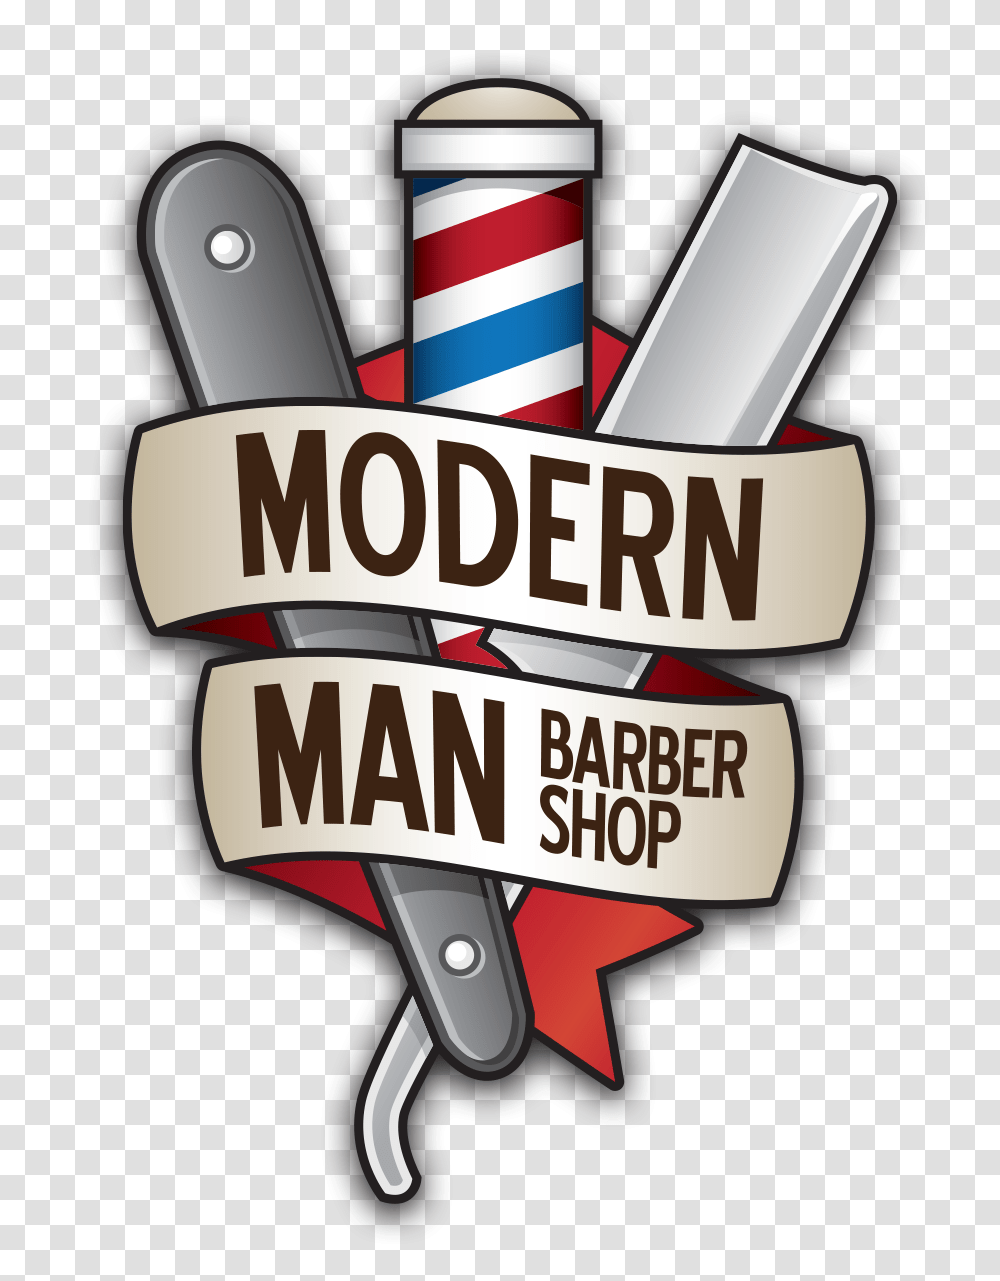 Modern Man Barber Shop, Logo, Trademark Transparent Png